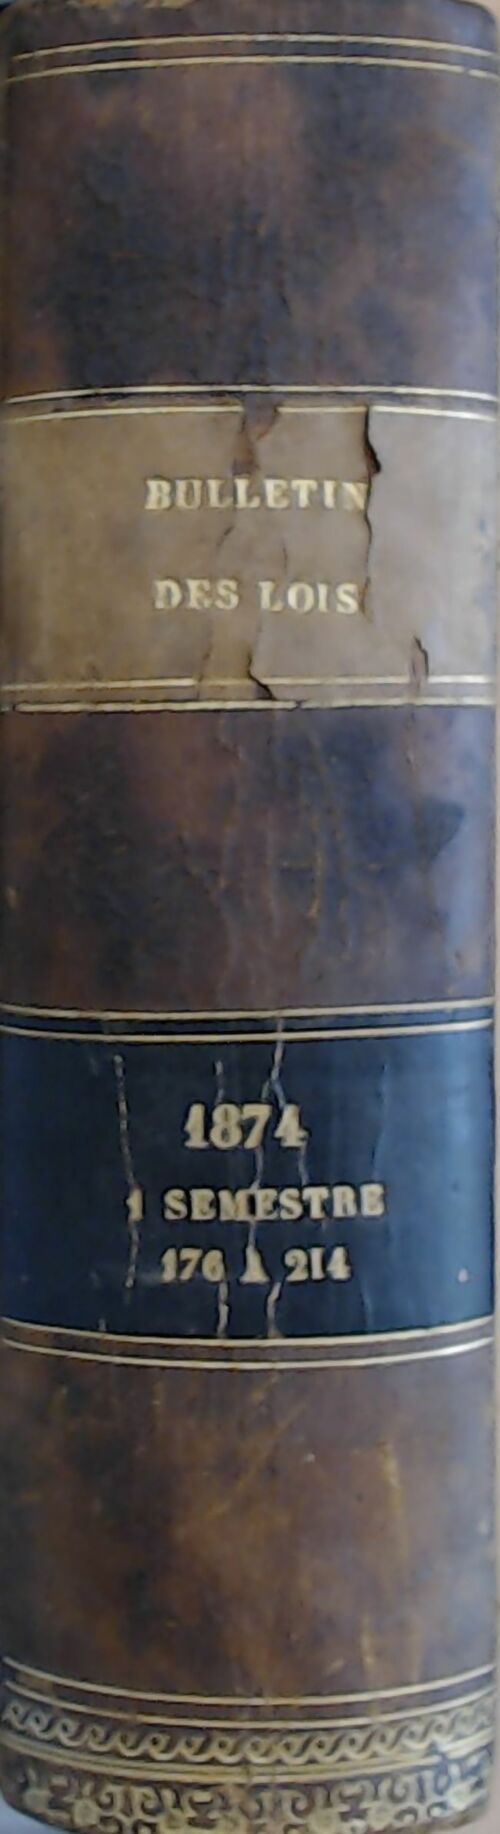 Bulletin des lois 1er semestre 1874 - Collectif -  Imprimerie Nationale GF - Livre